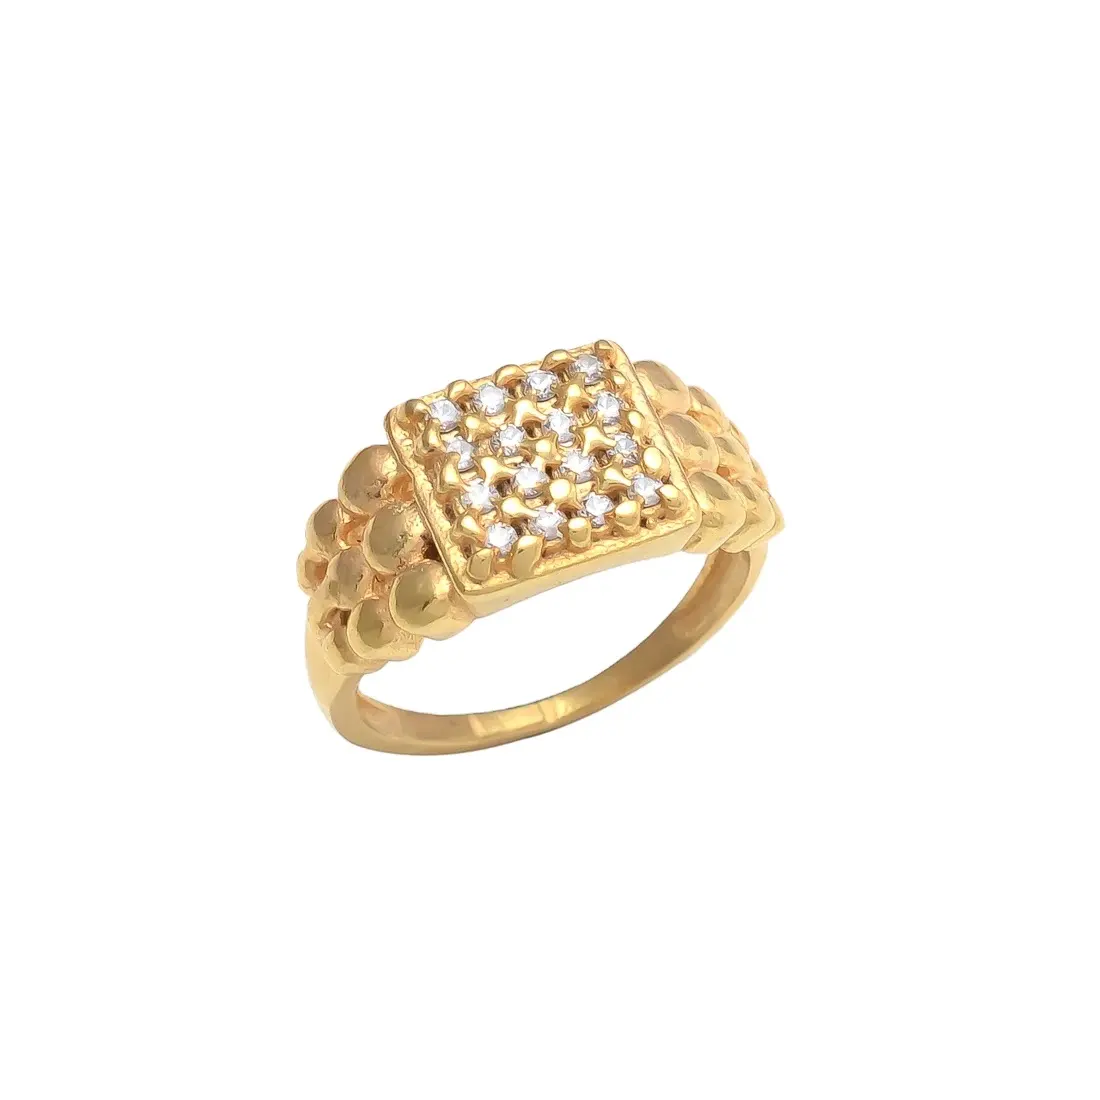 De Luxe Diamanten Gouden Ring! Dit Prachtige Stuk Heeft Prachtige Diamanten Aan De Zijkant. Voor Mannen En Vrouwen